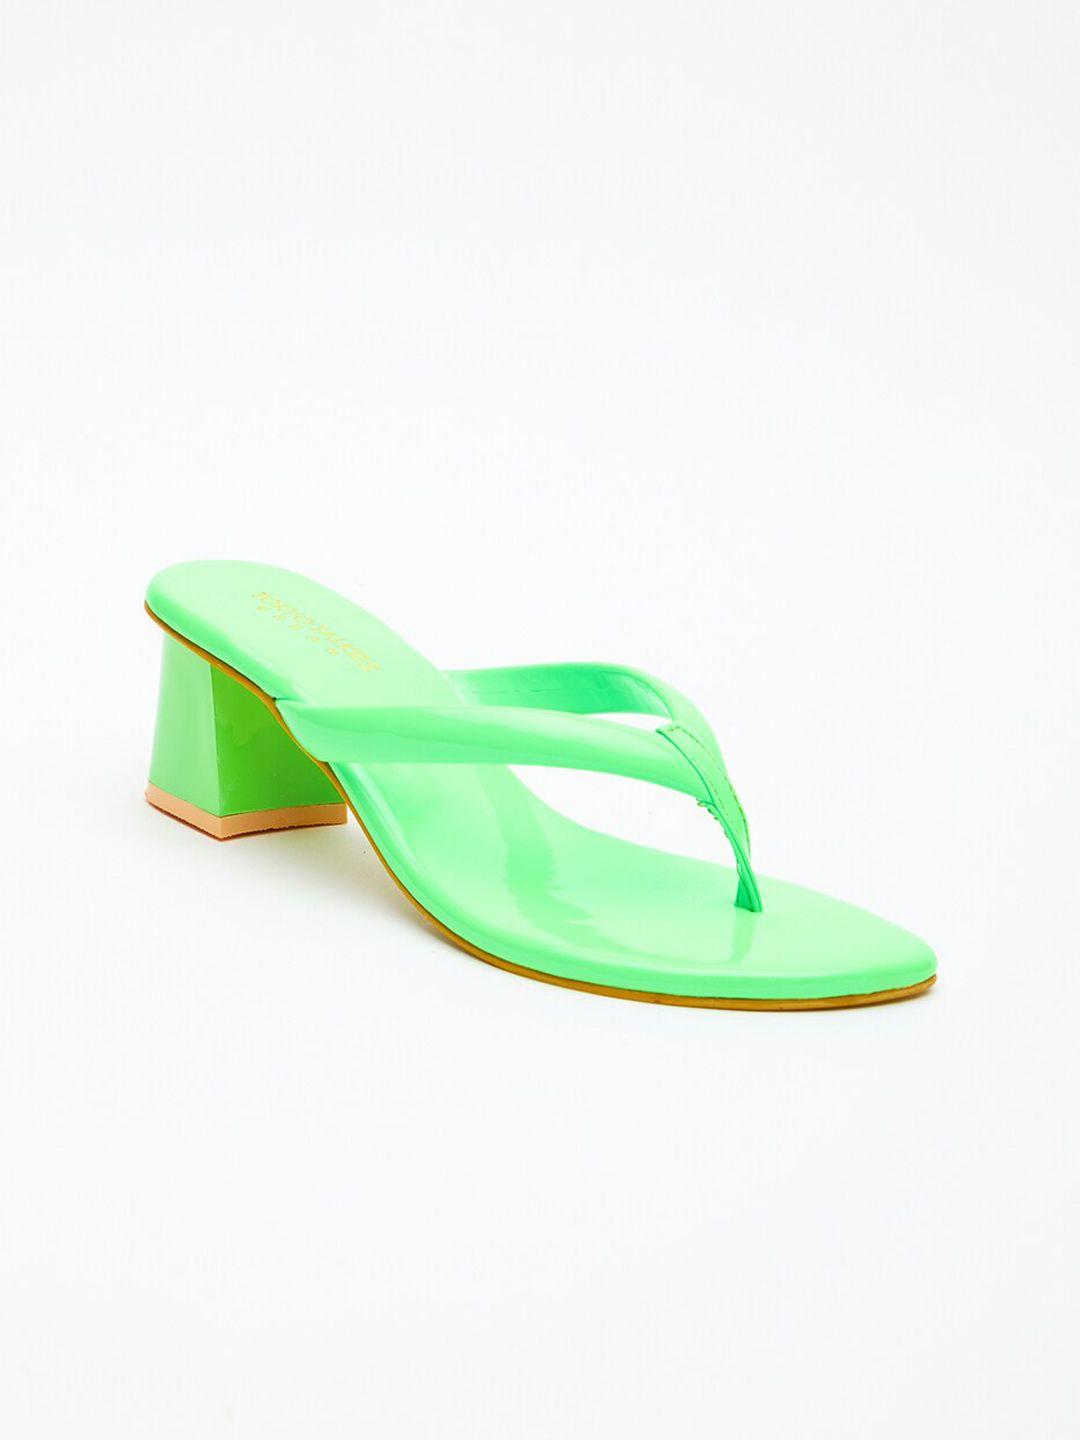 tokyo talkies green block open toe heels